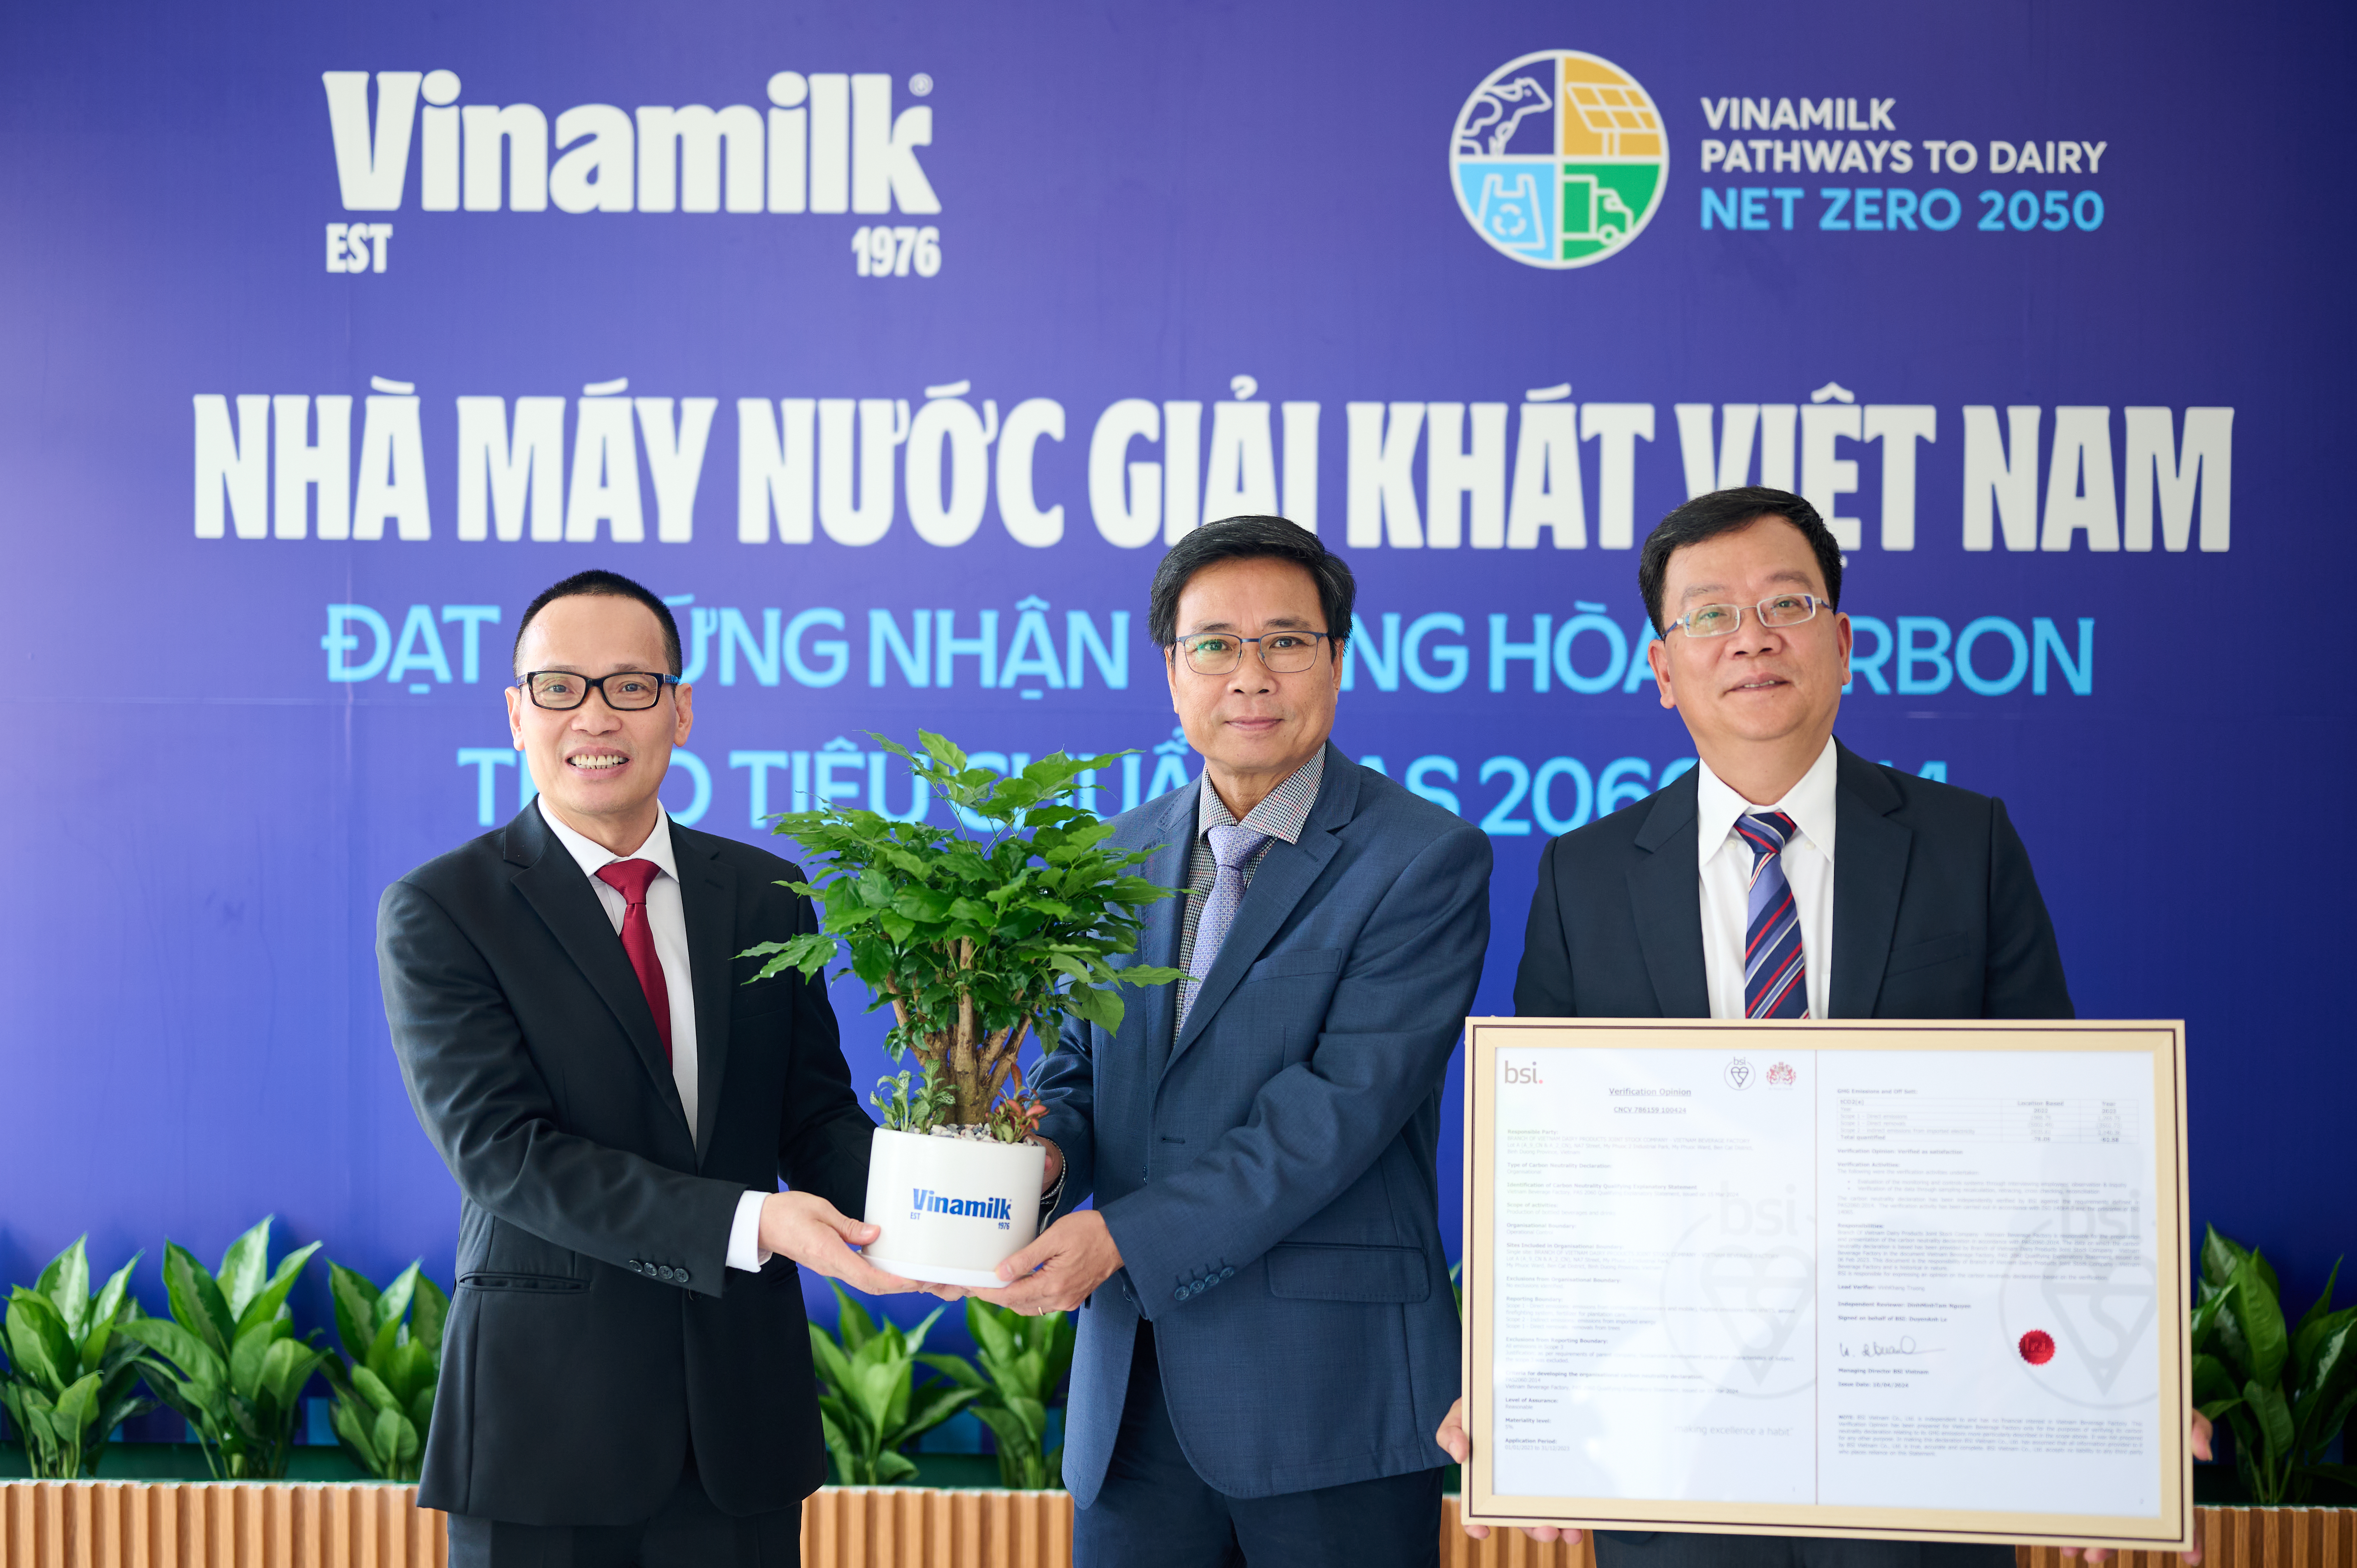 &Ocirc;ng L&ecirc; Ho&agrave;ng Minh, GĐĐH Sản xuất của Vinamilk trao tặng c&acirc;y lưu niệm cho đại diện BSI Việt Nam &nbsp;